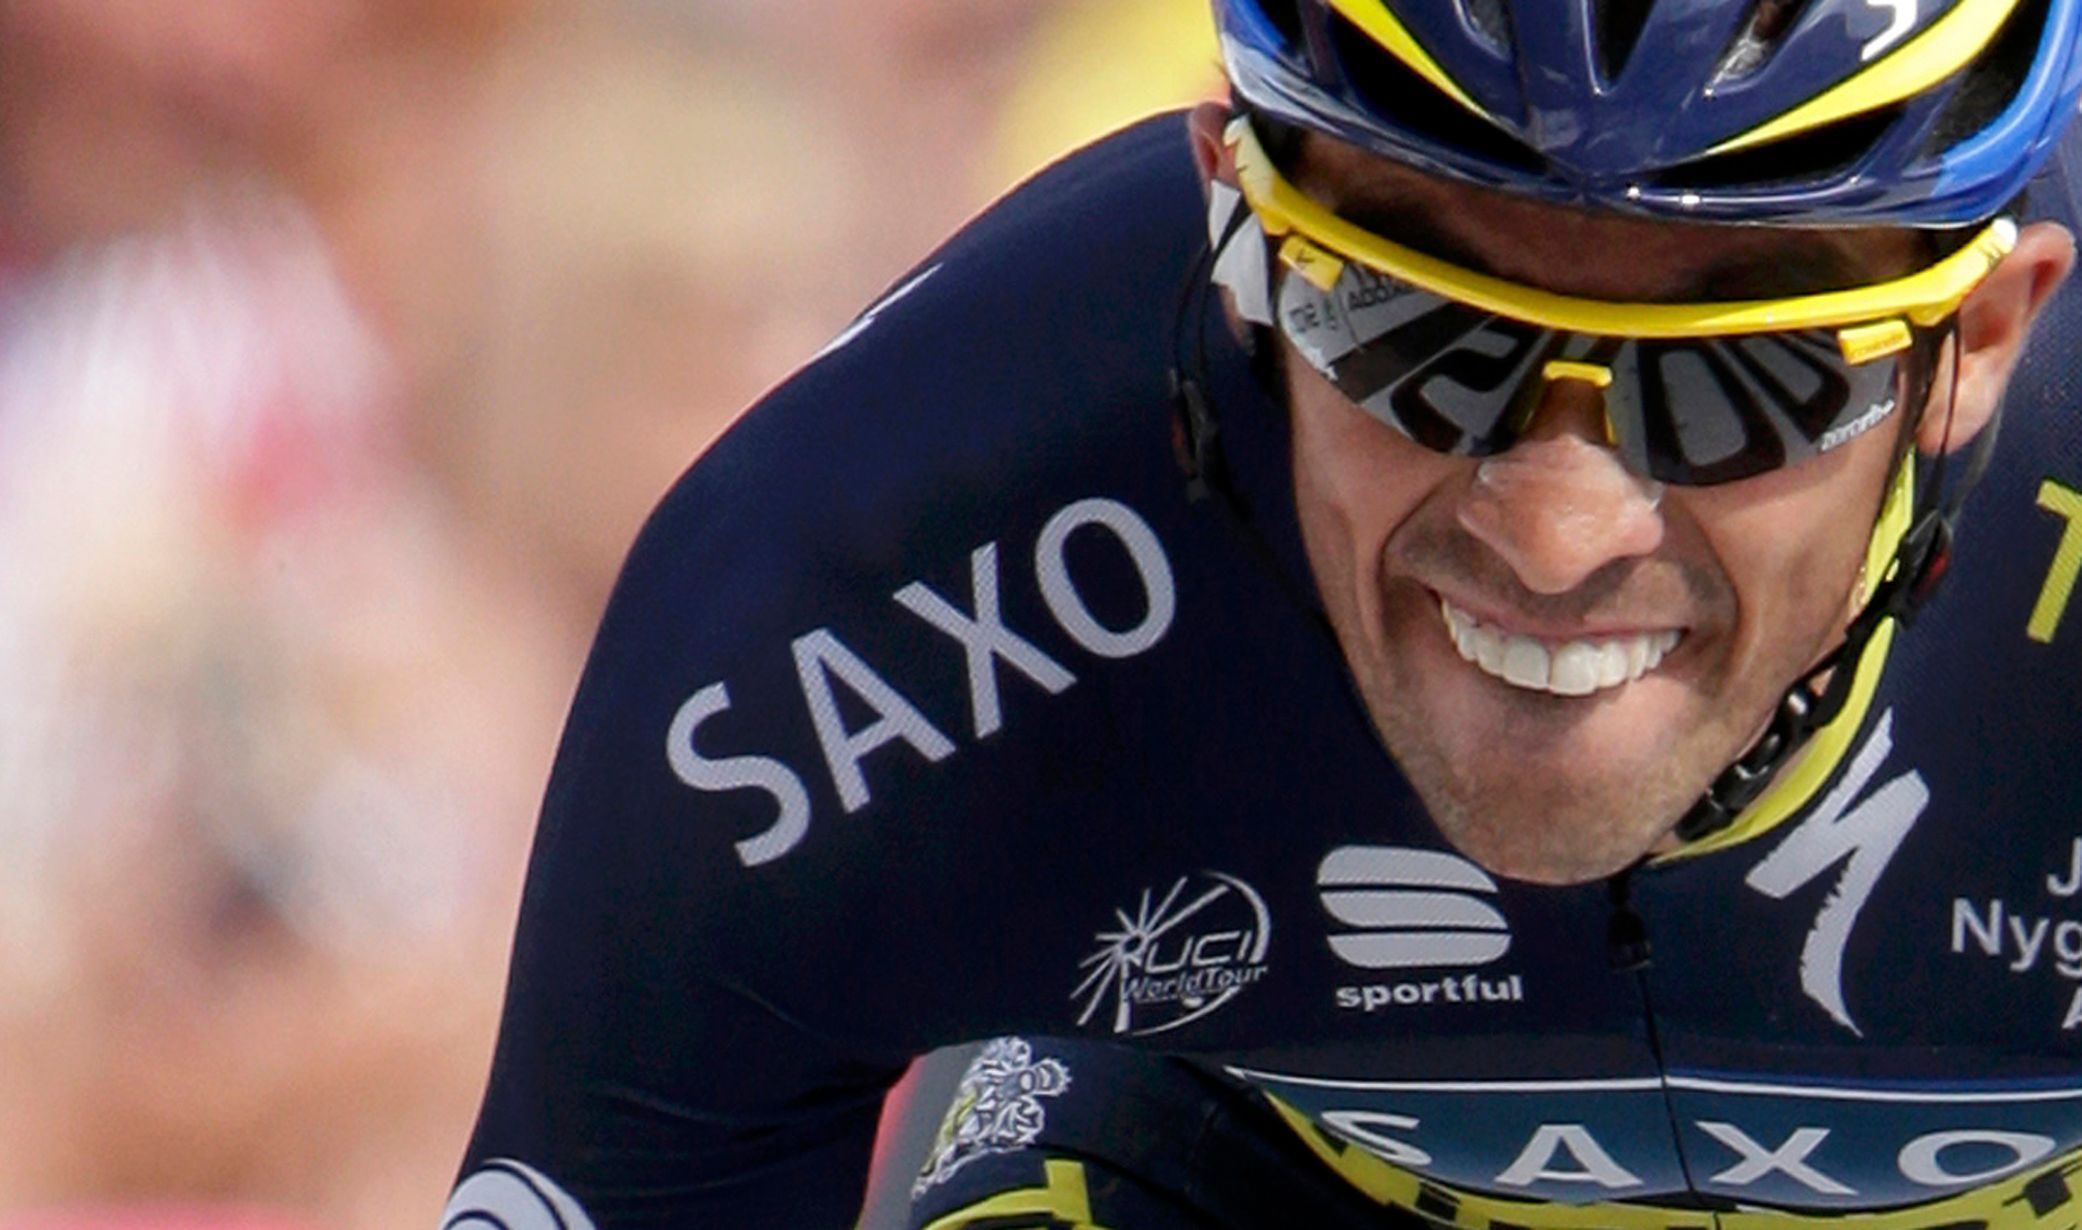 17. etapa Tour de France 2013 - horská časovka: Alberto Contador